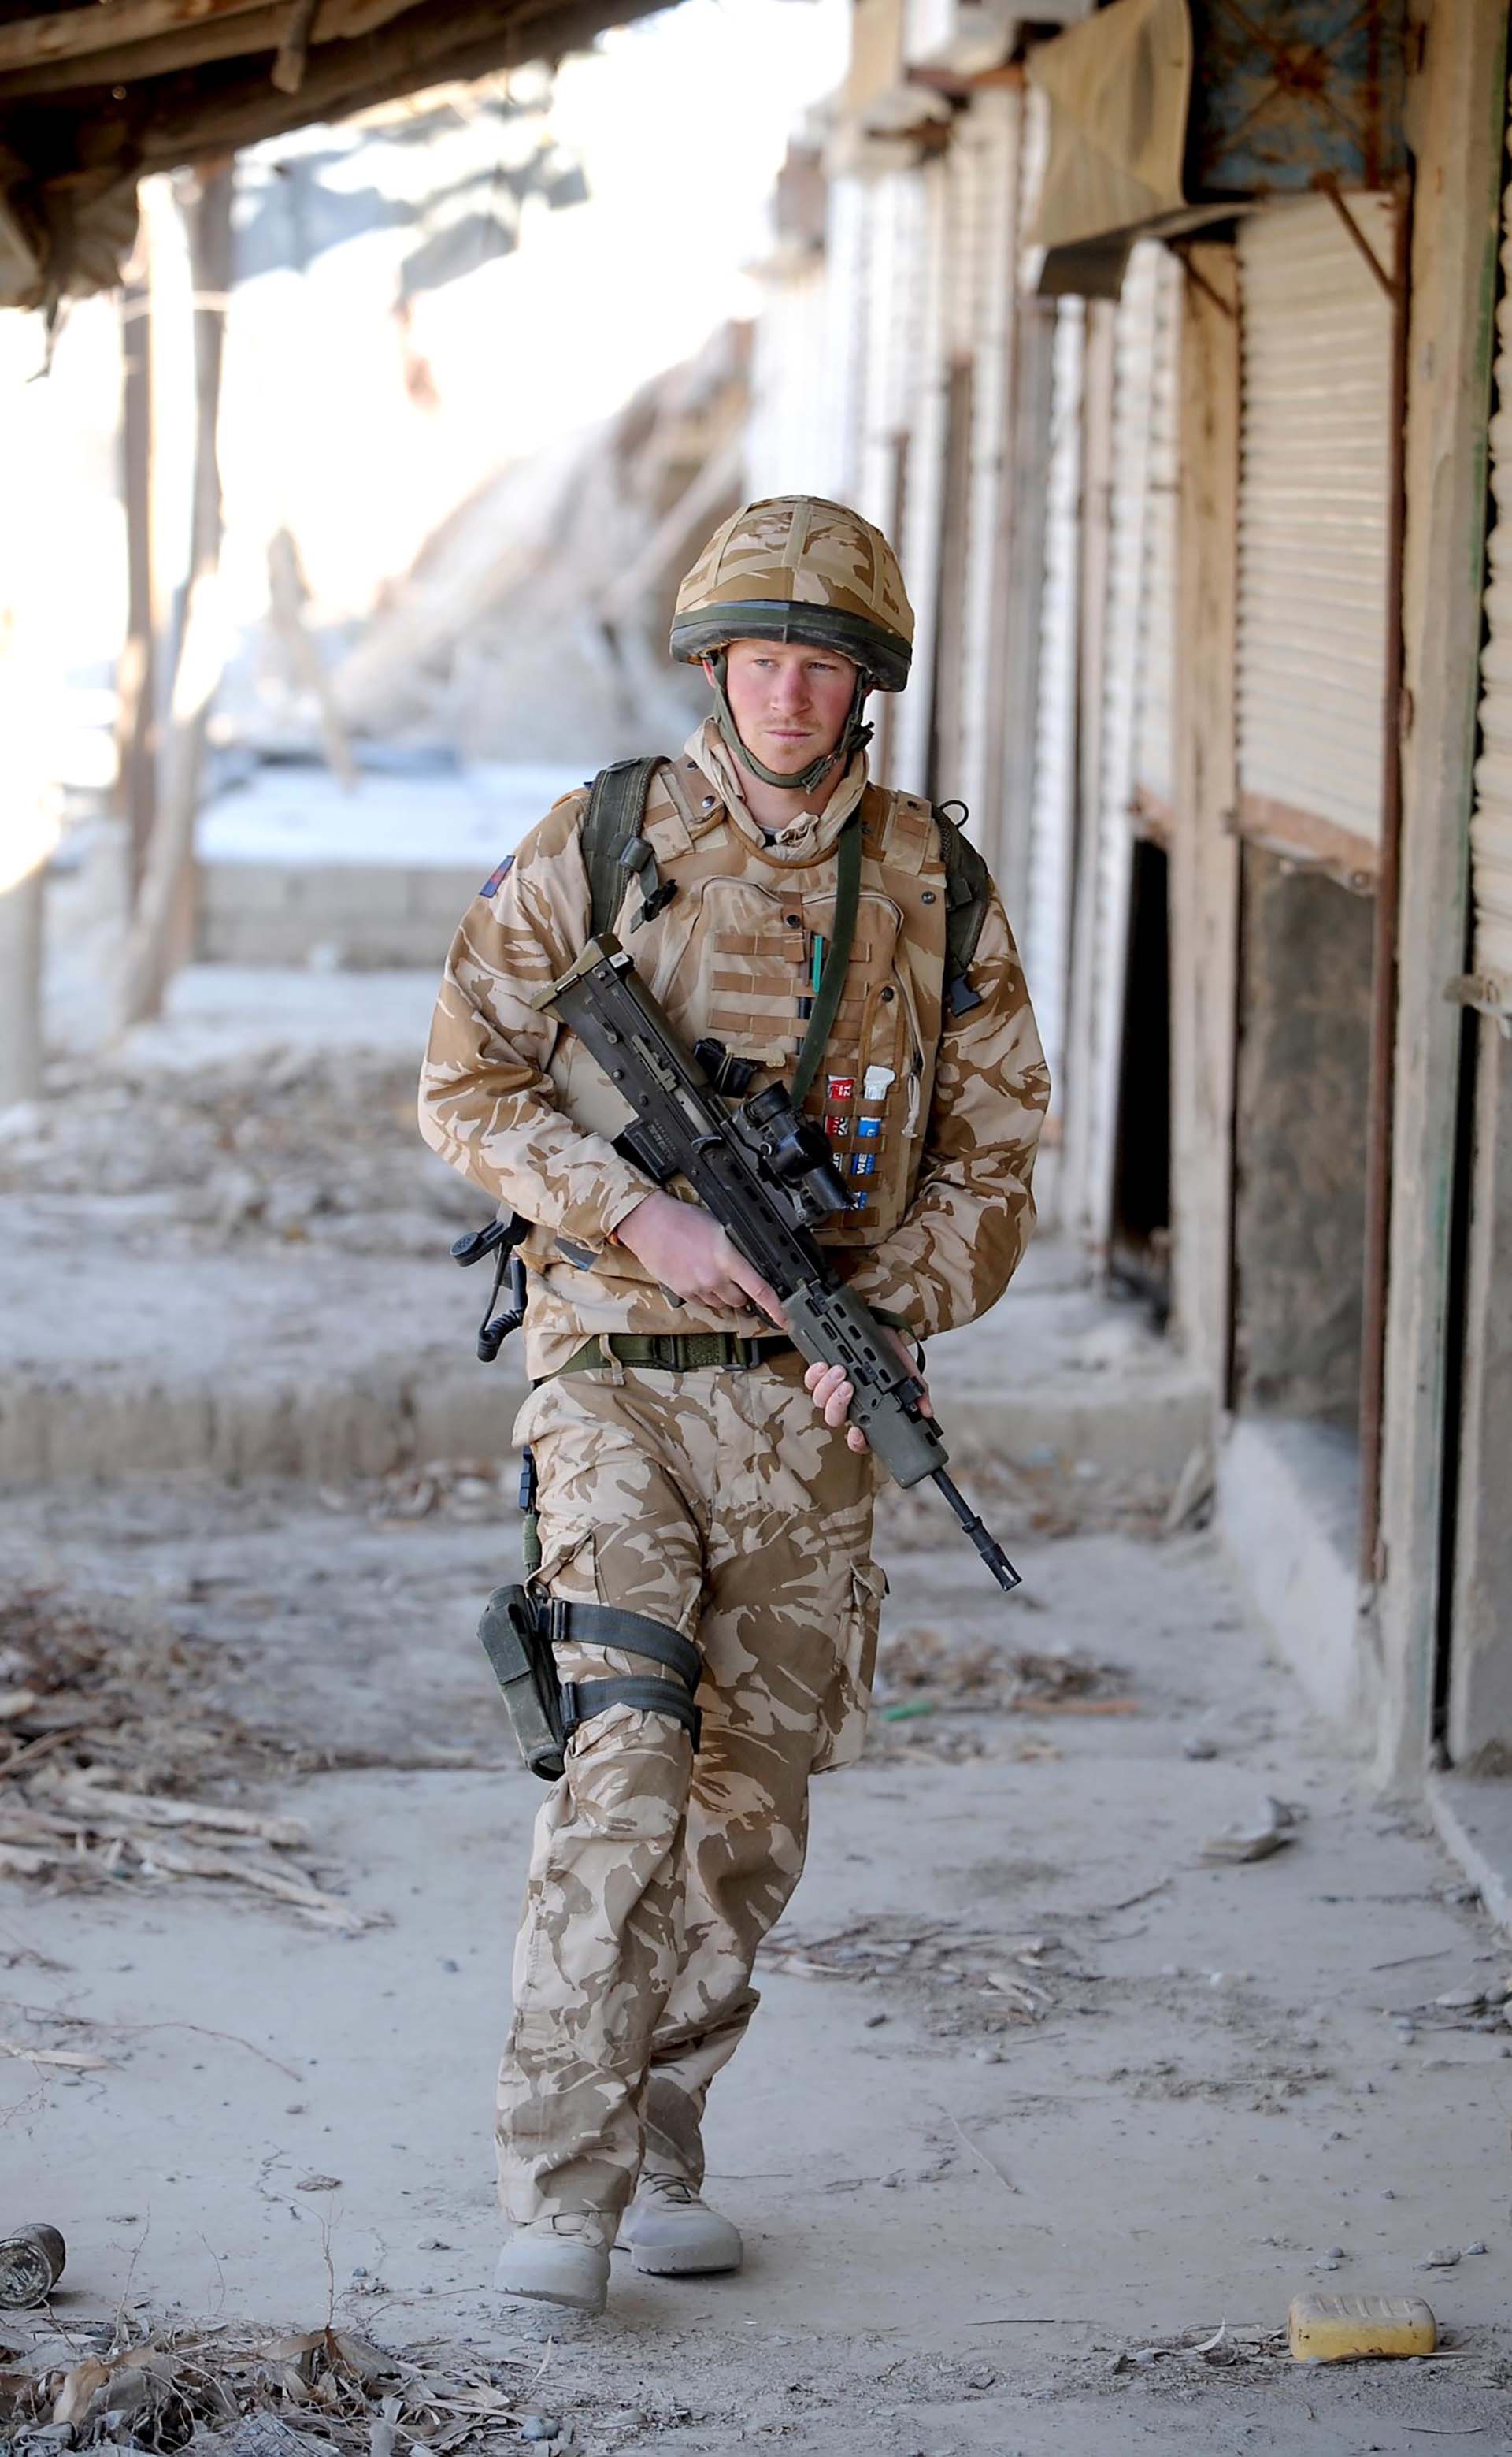 El príncipe Harry de patrulla por la ciudad desierta de Garmisir, en la provincia de Helmand, Afganistán, cerca de FOB Delhi (base de operaciones avanzada), donde estaba destinado en 2007 (Shutterstock)